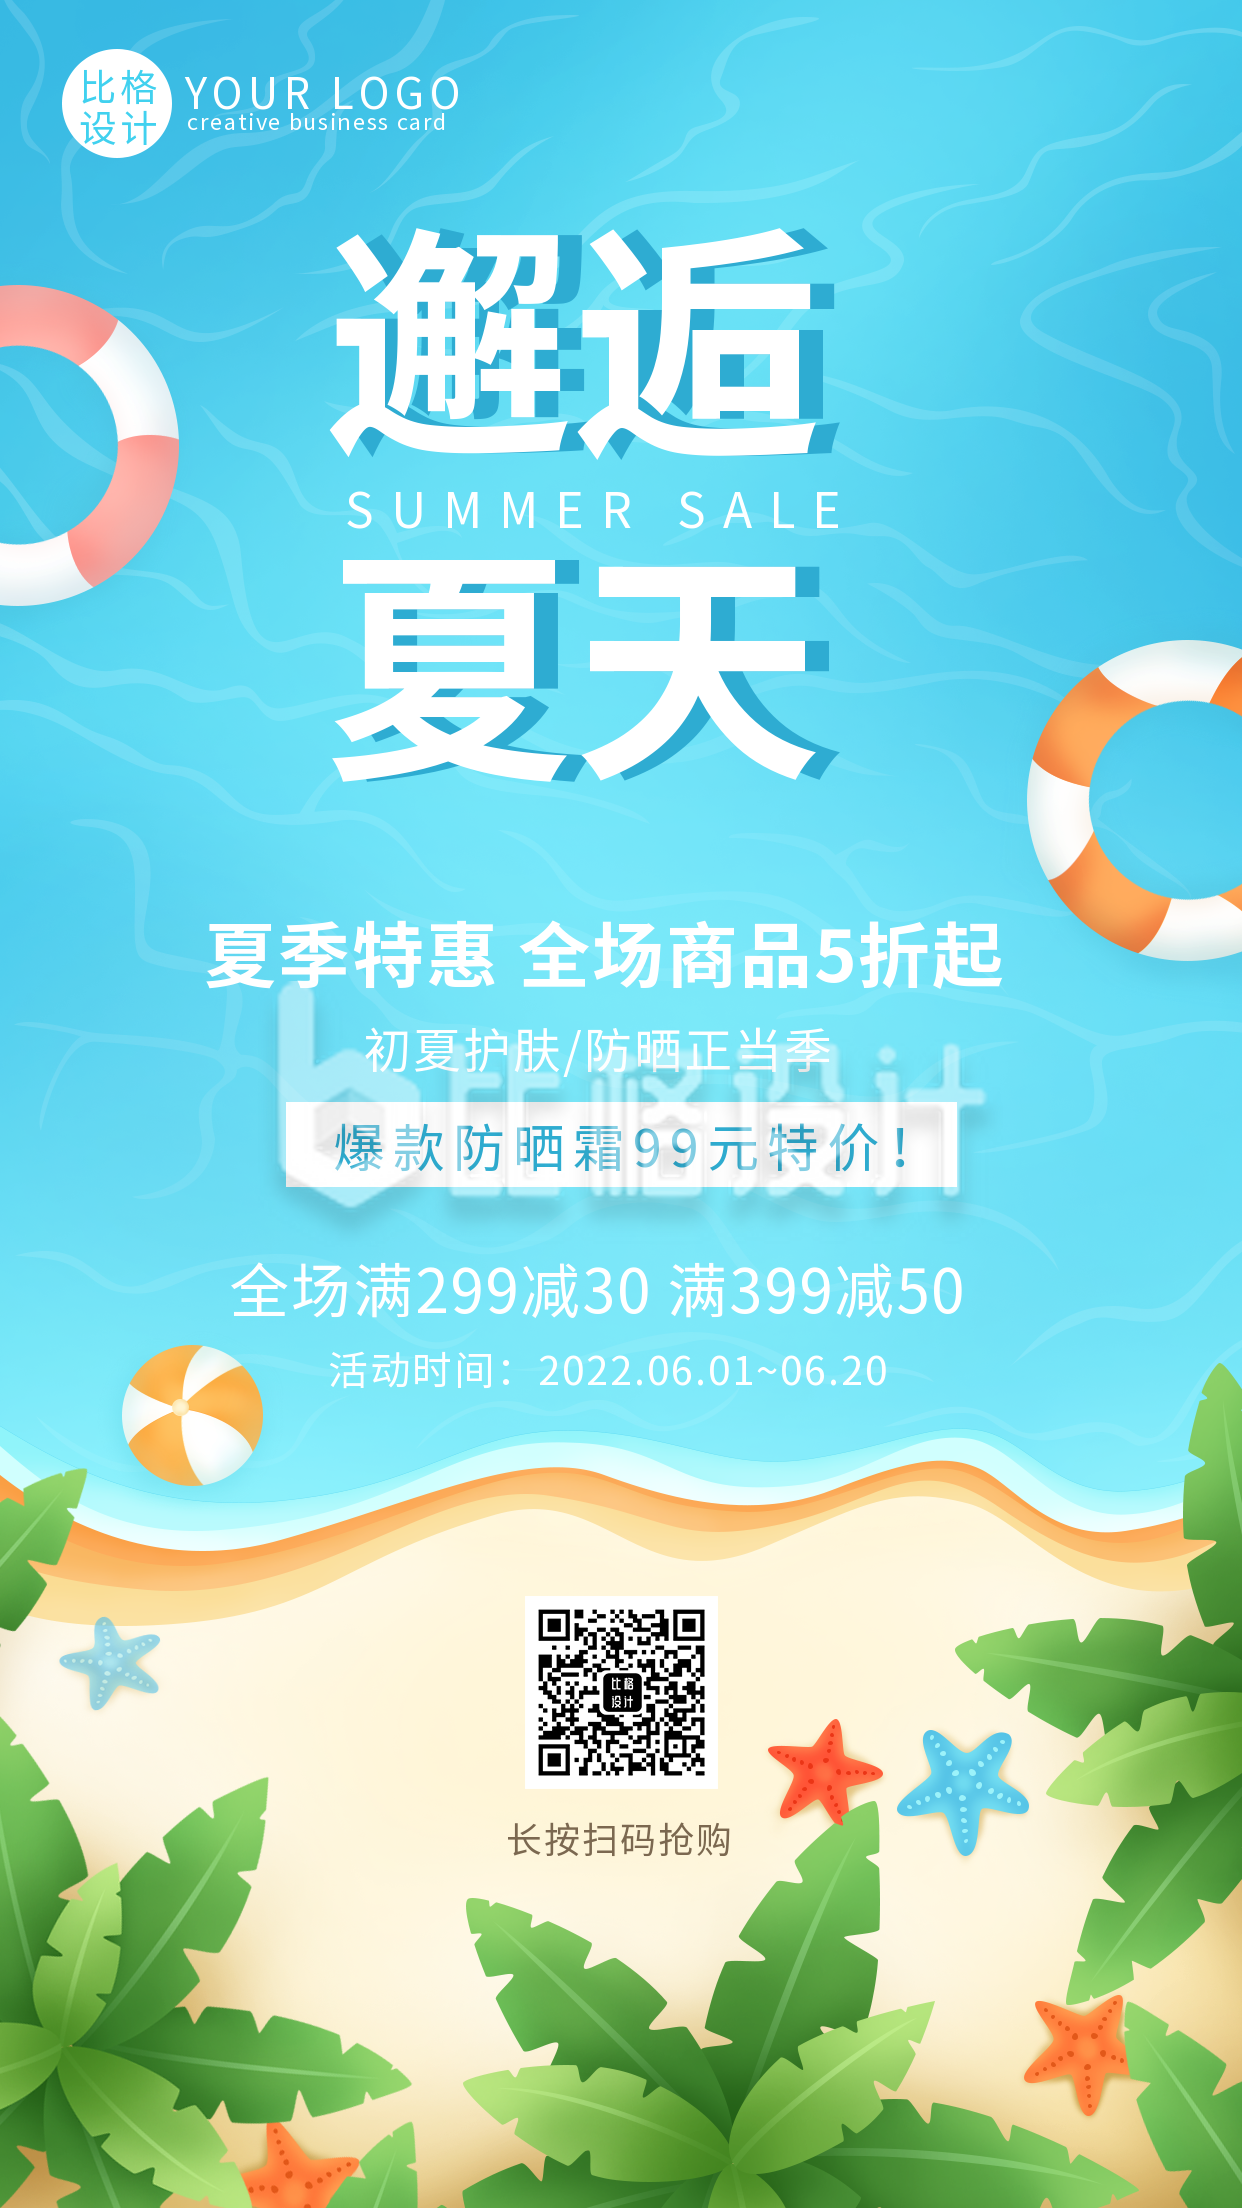 夏季新品上市优惠促销福利活动手机海报